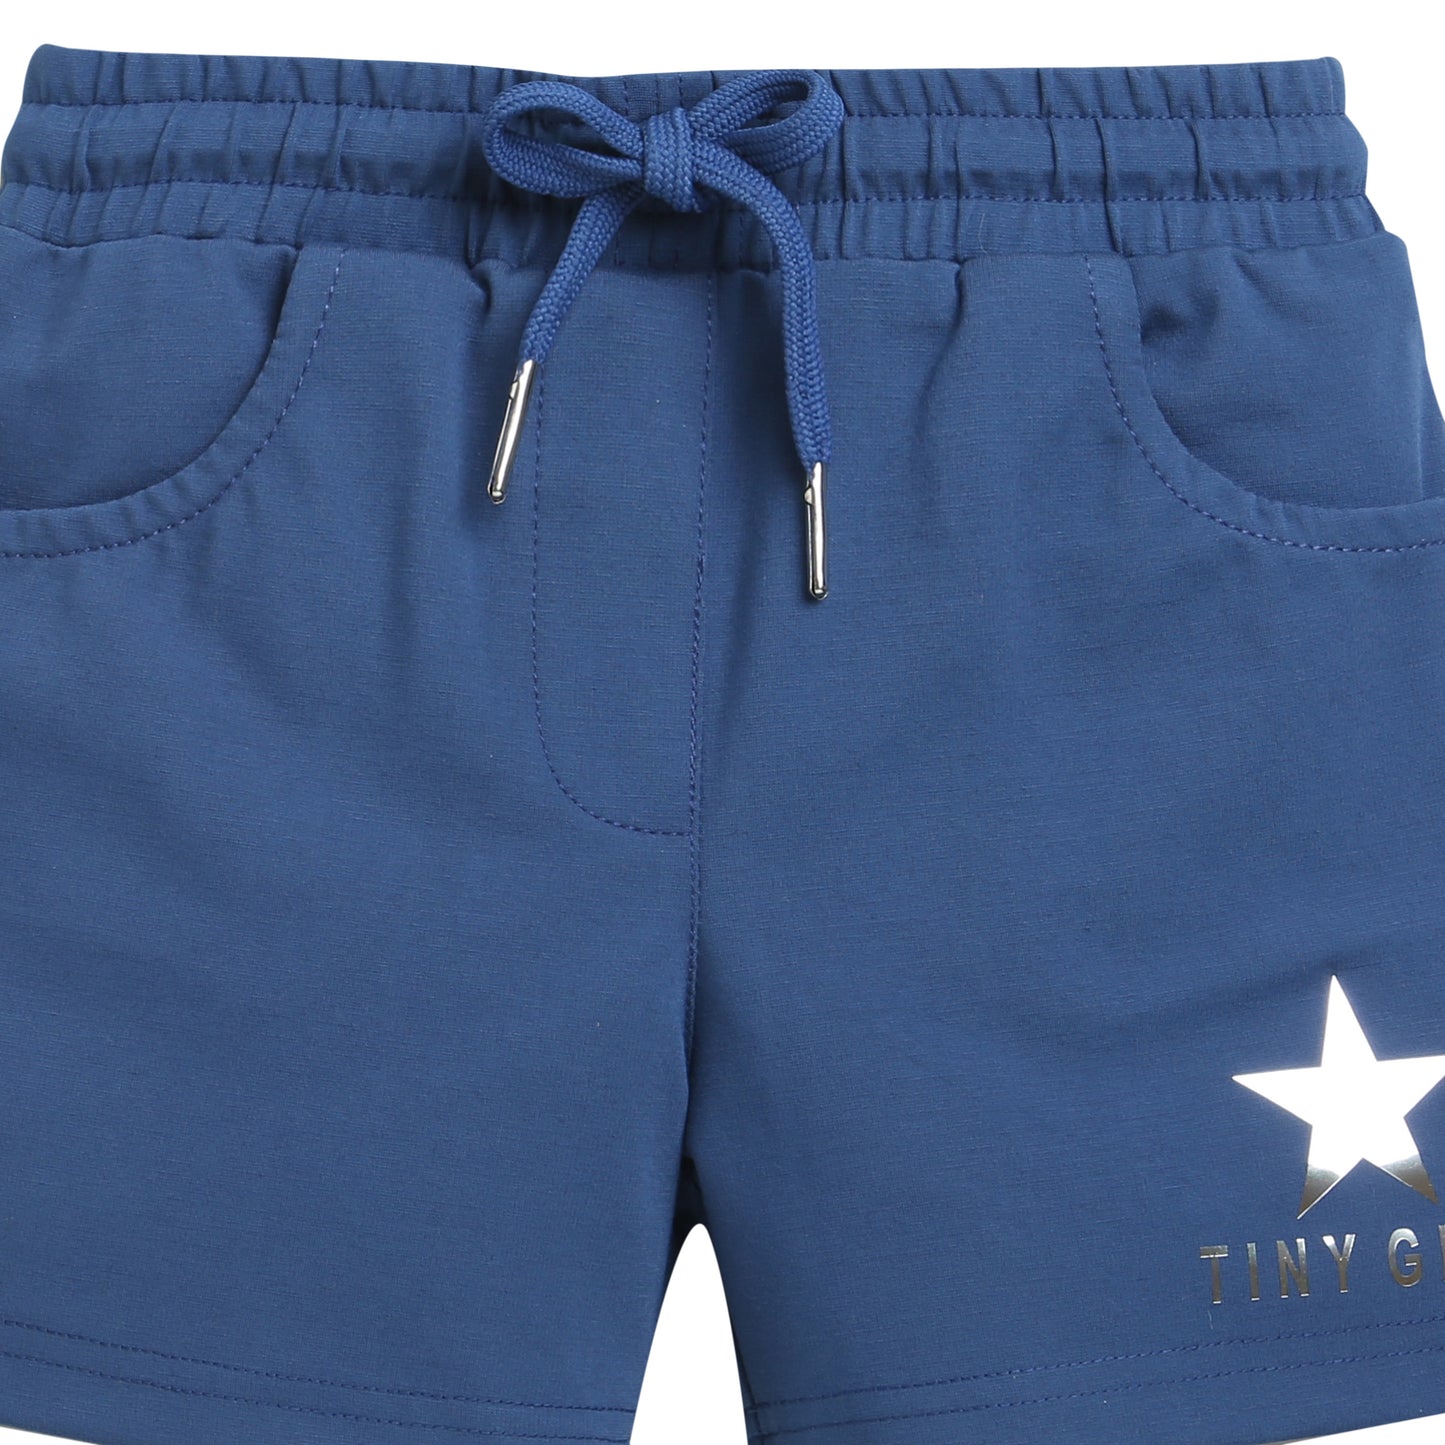 Basic Indigo Blue Tiny Girl Shorts